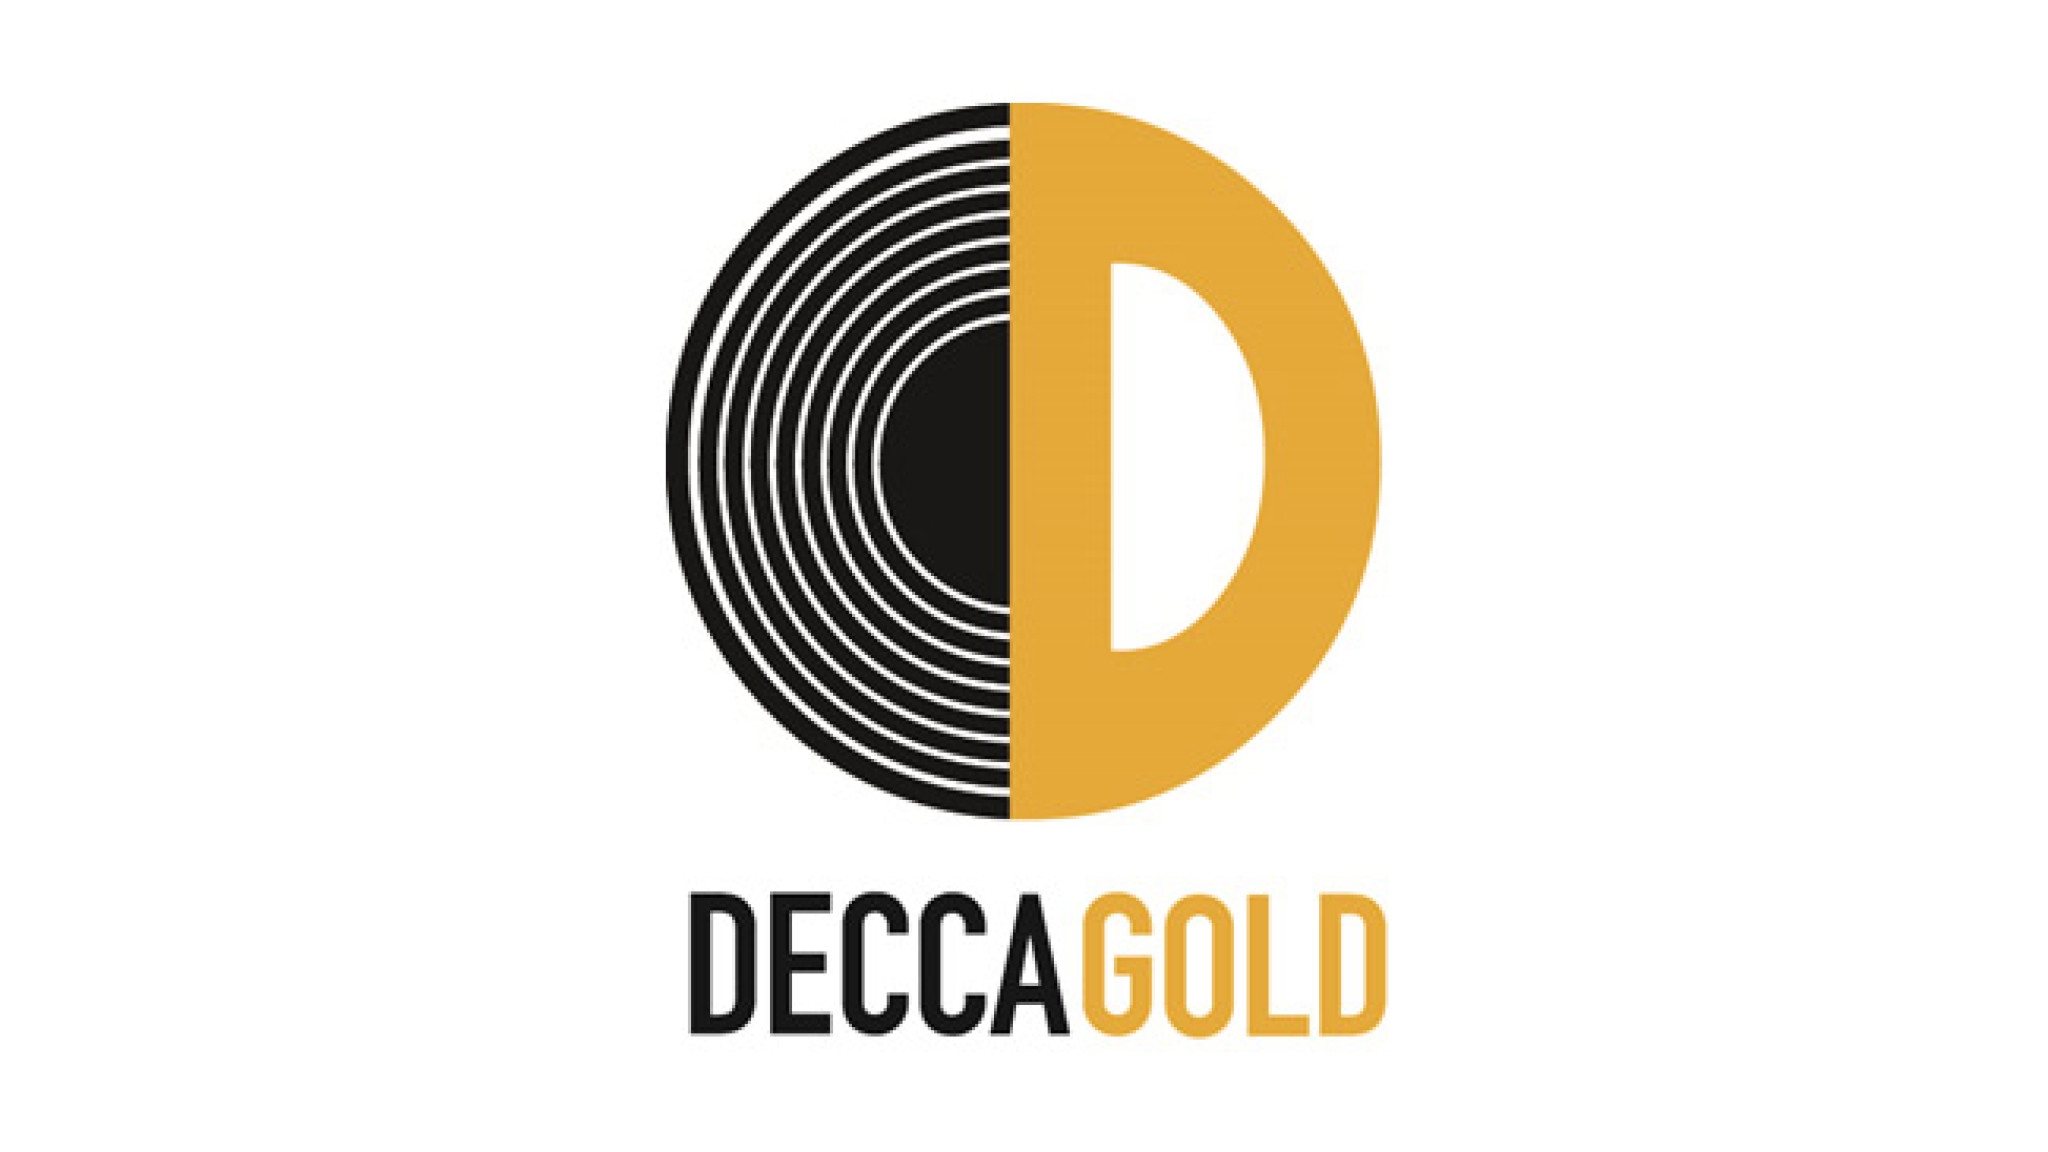 Revival: Decca Gold kündigt zwei Alben an